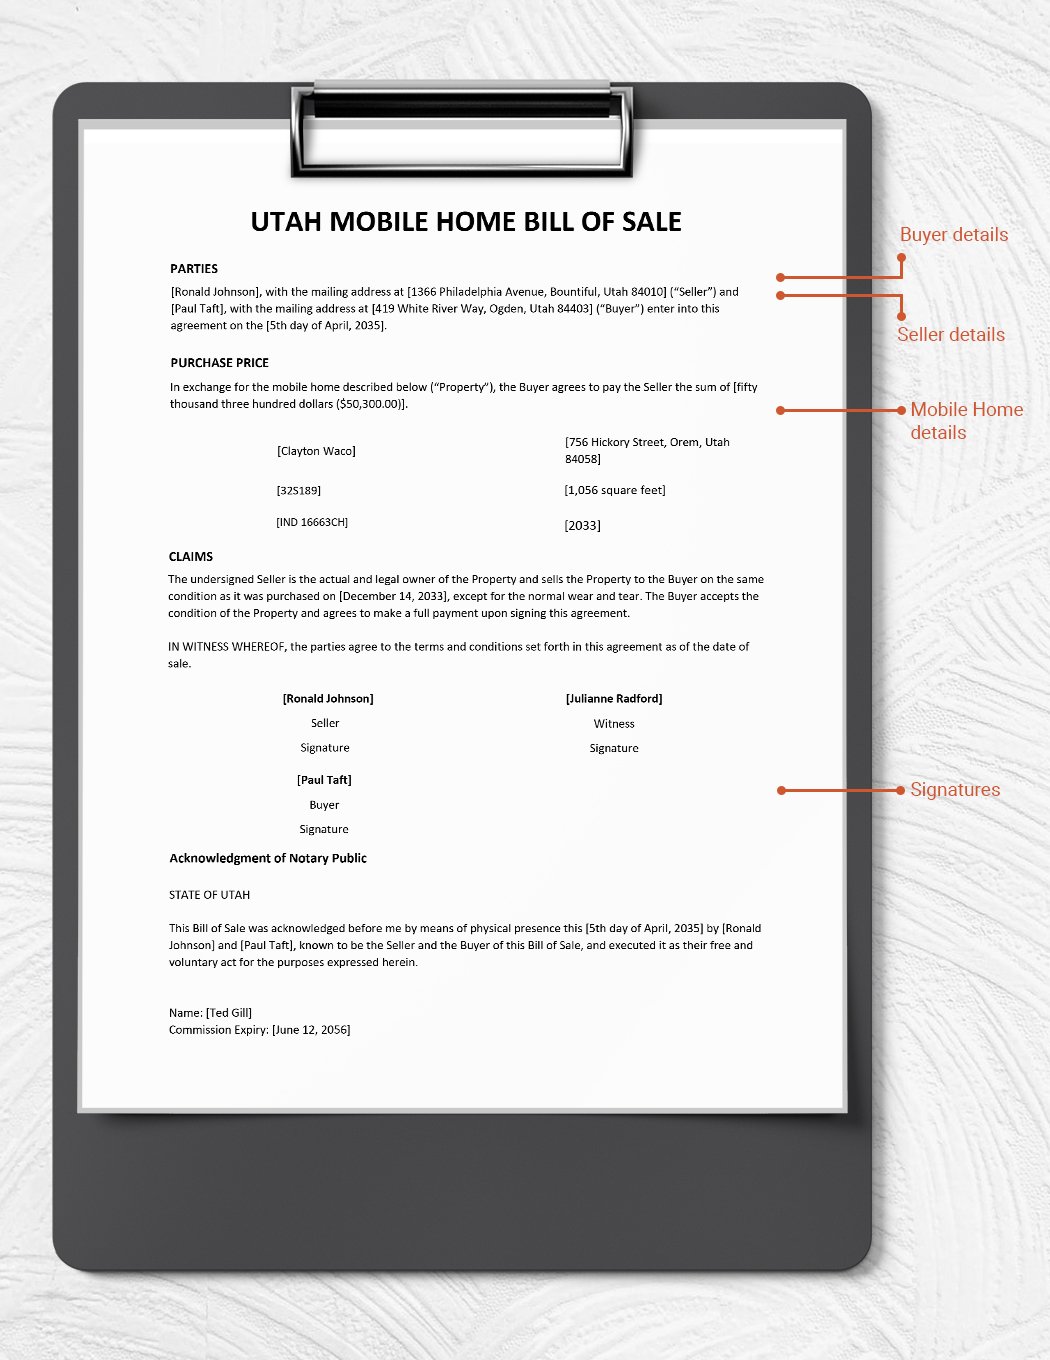 Utah Mobile Home Bill of Sale Template